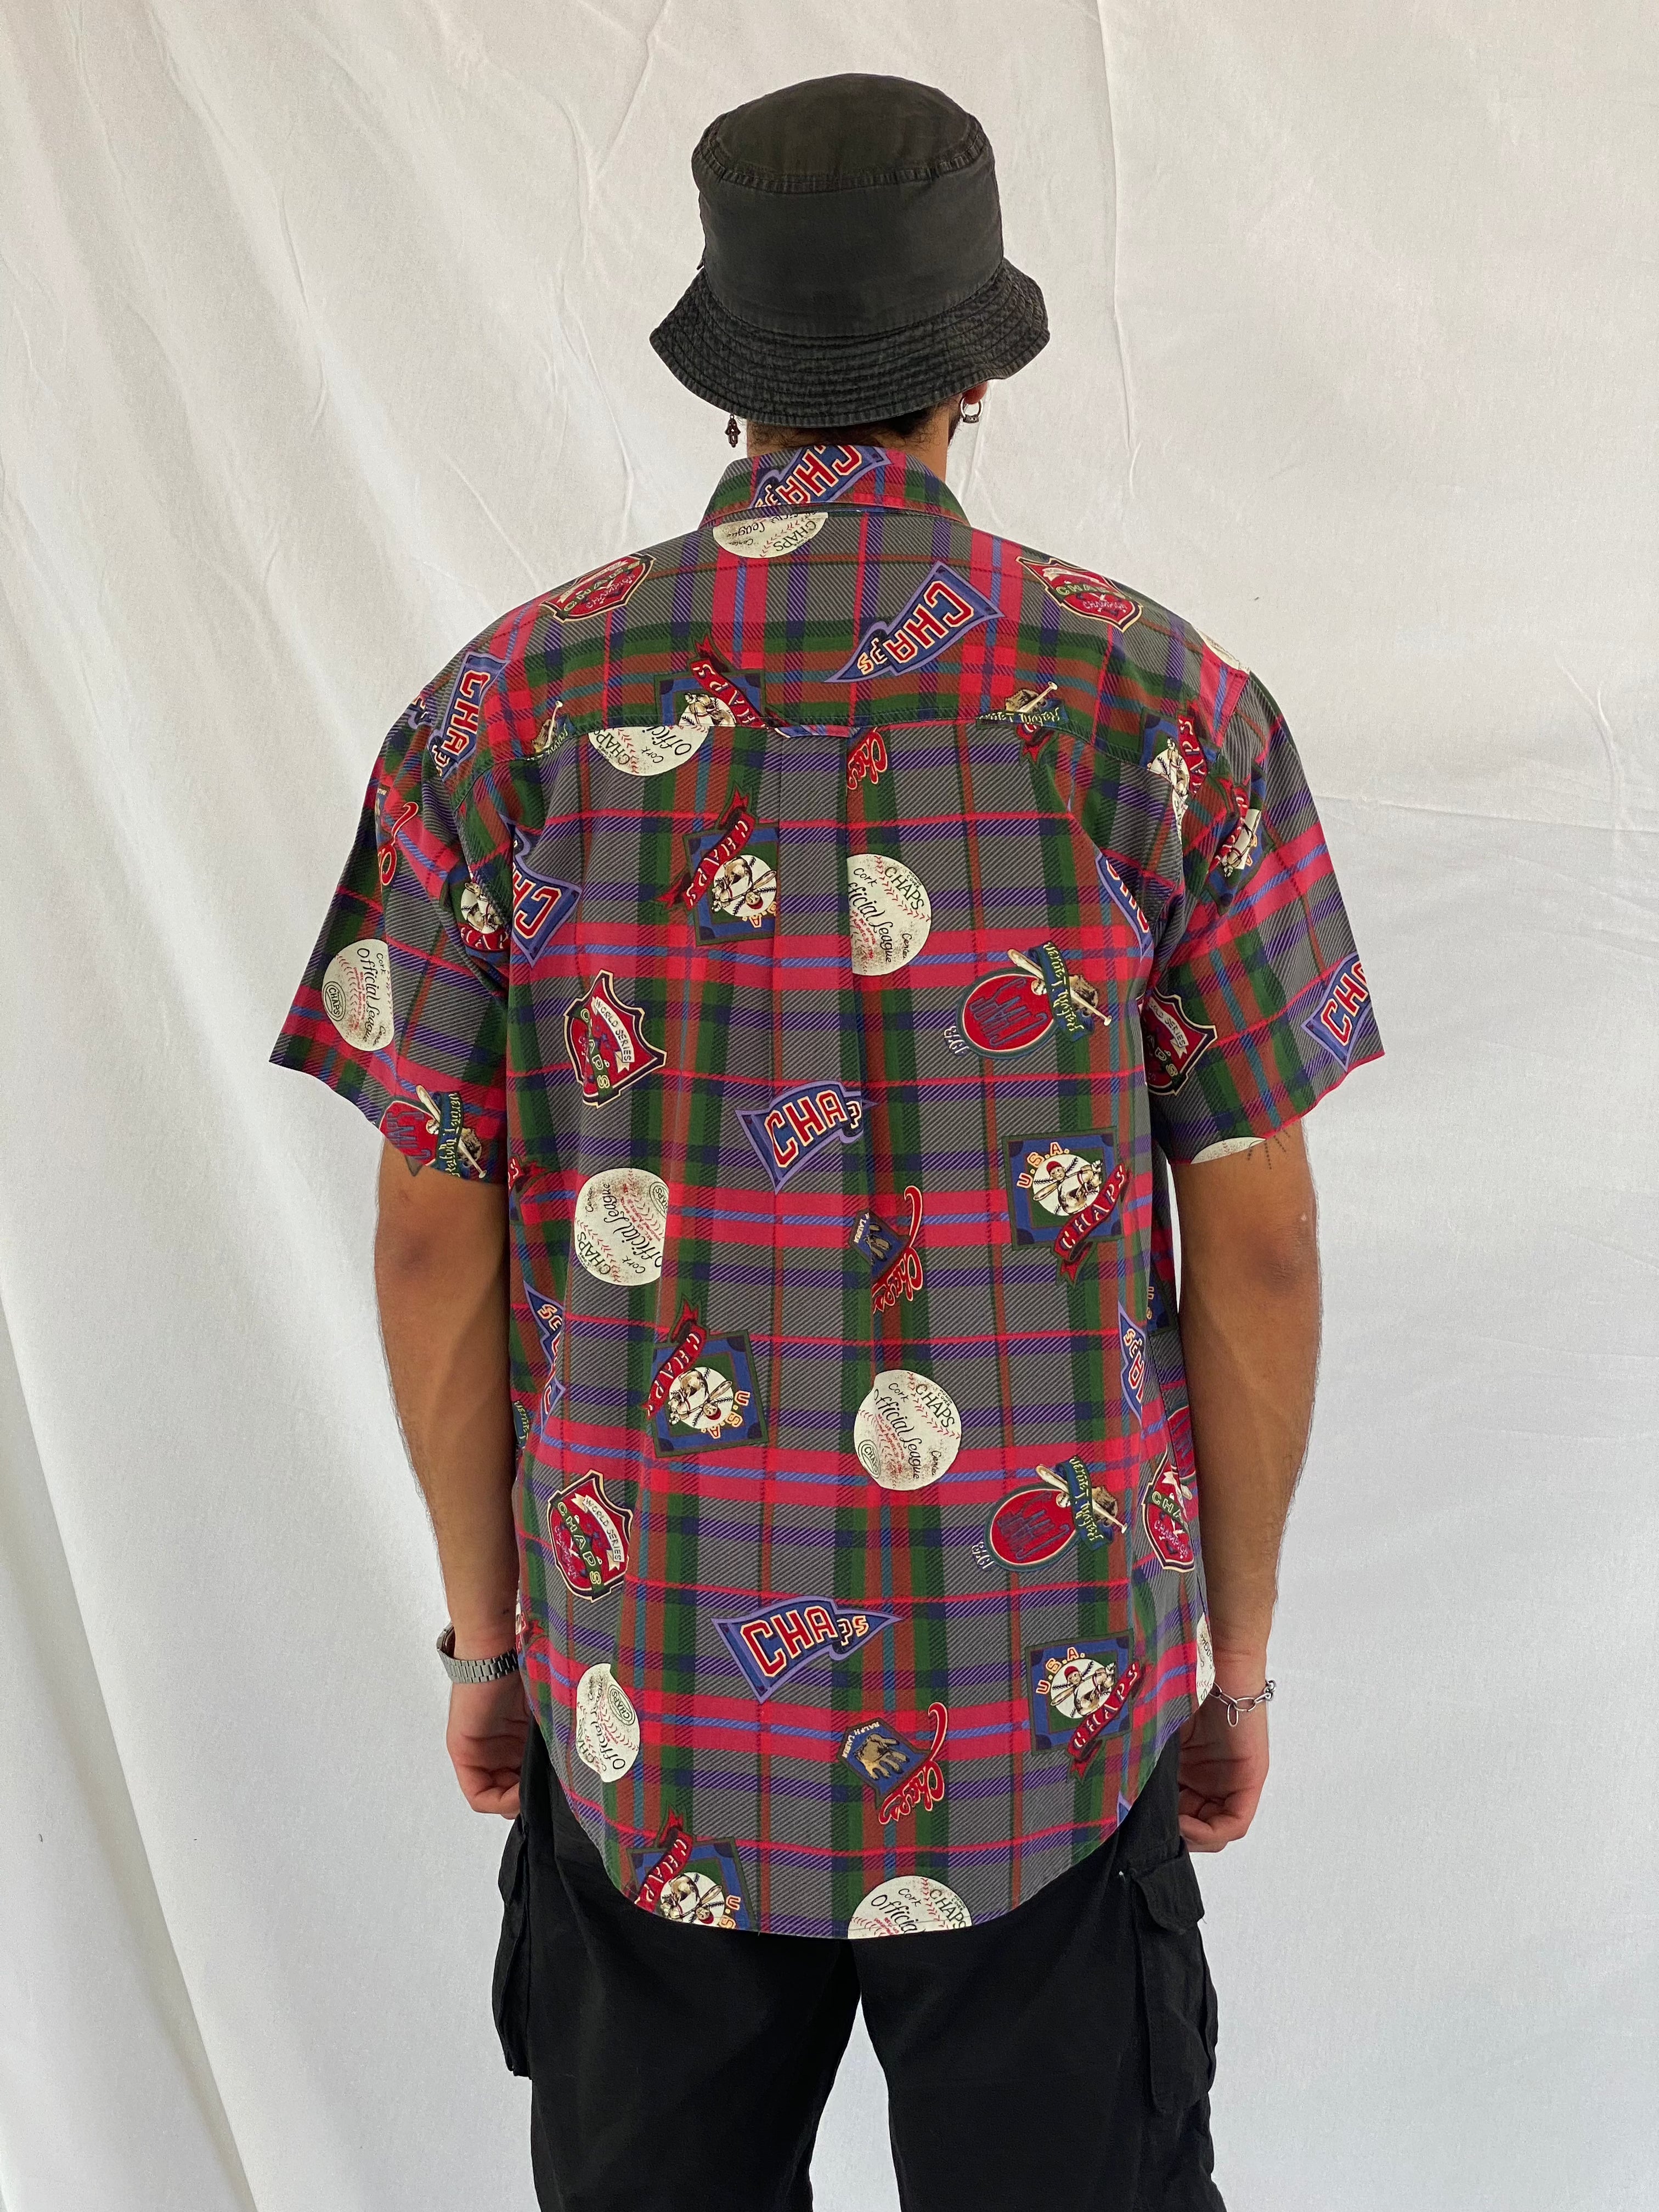 Vintage CHAPS By Ralph Lauren - ralph lauren - 90s mens shirt